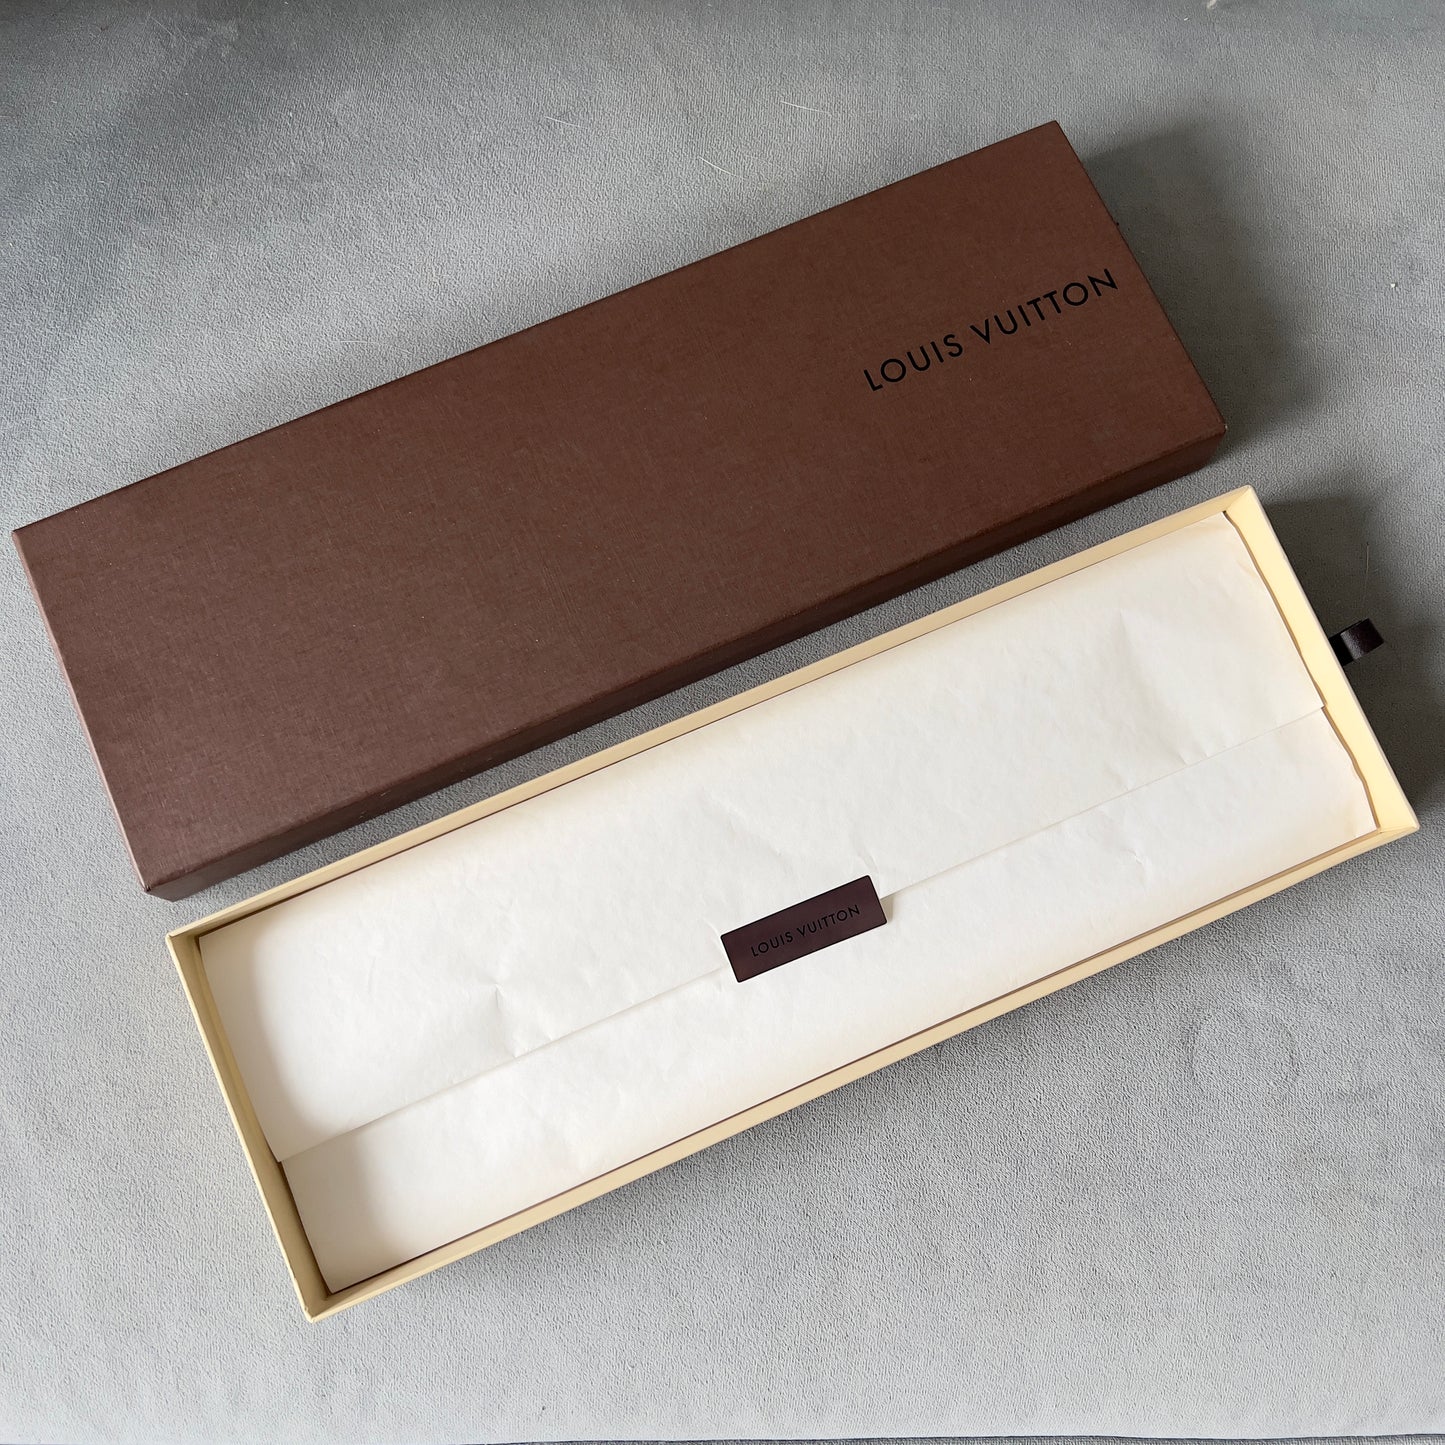 LOUIS VUITTON Long Box 14.70x5x1.10” + Tissue + Shopping Bag 17.25x5.75x1.60”